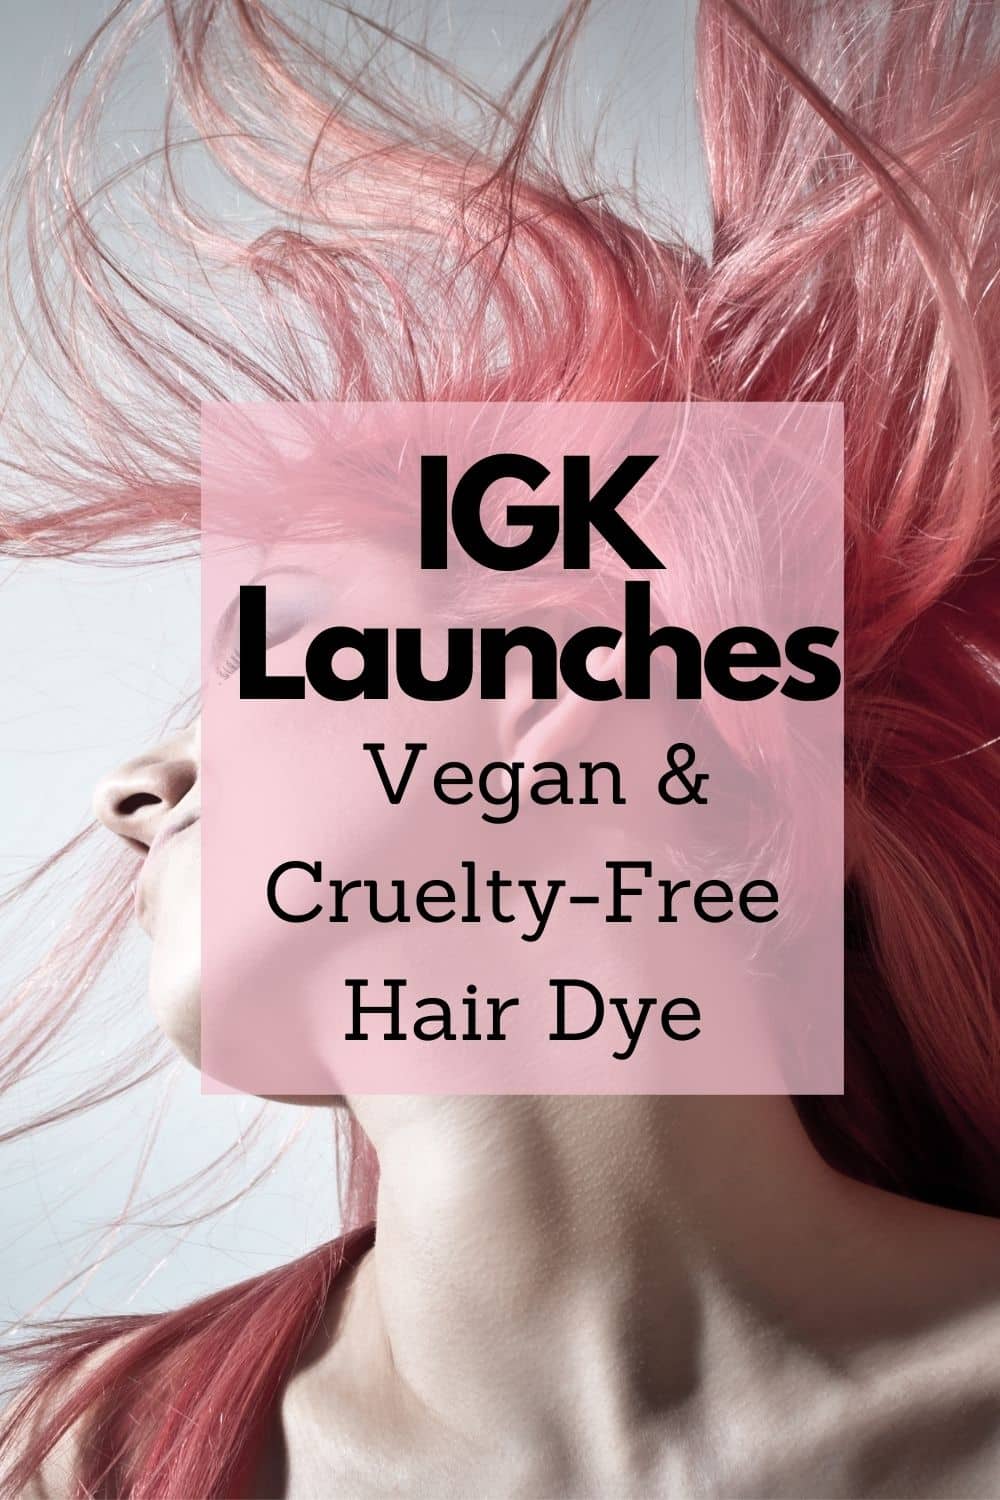 igk vegan hair dye